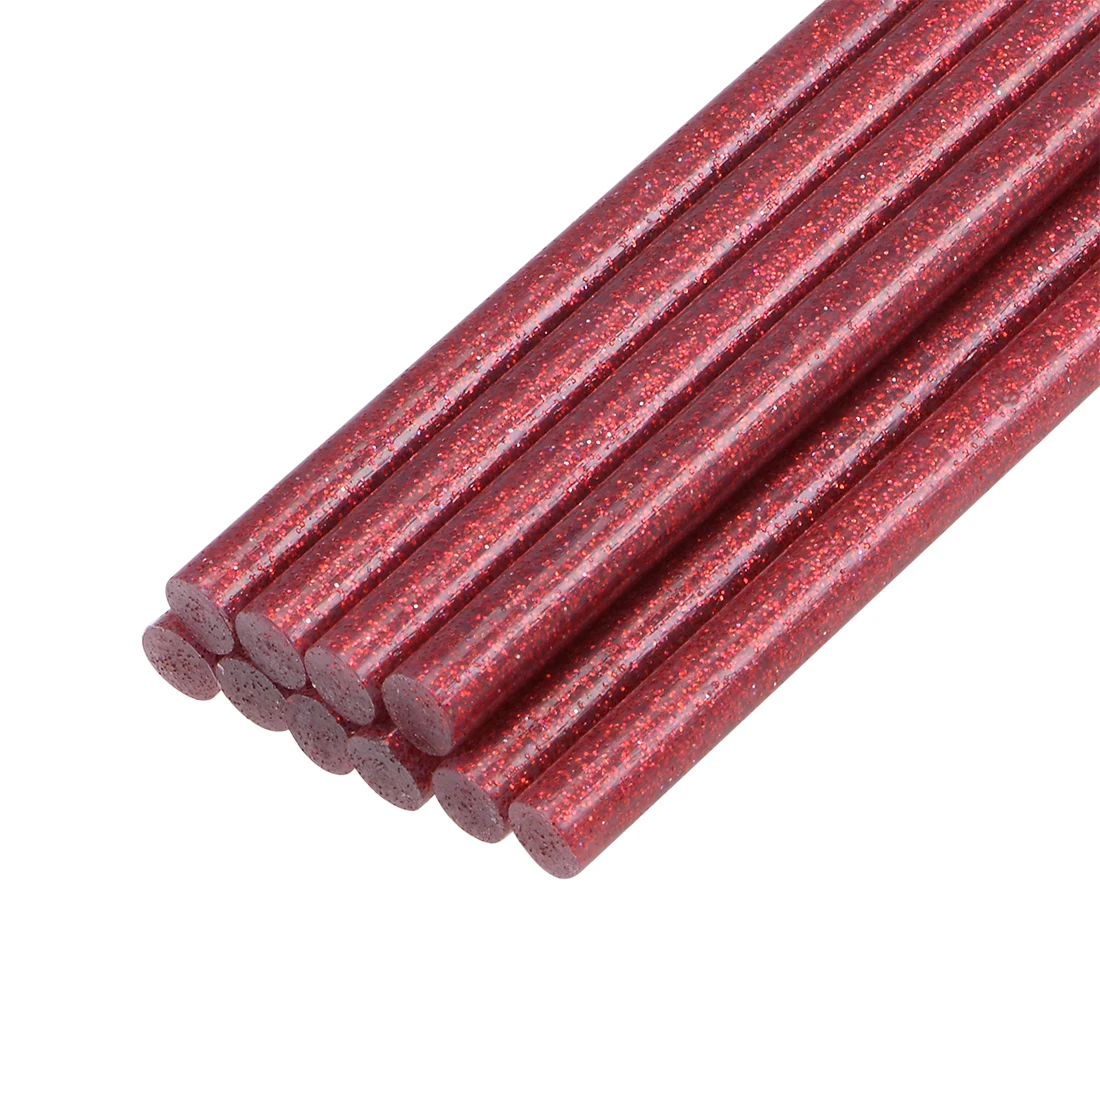 Uxcell-Mini bâtons de colle chaude pour odorà colle, paillettes rouges, 0.27 po x 4 po, 10 pièces